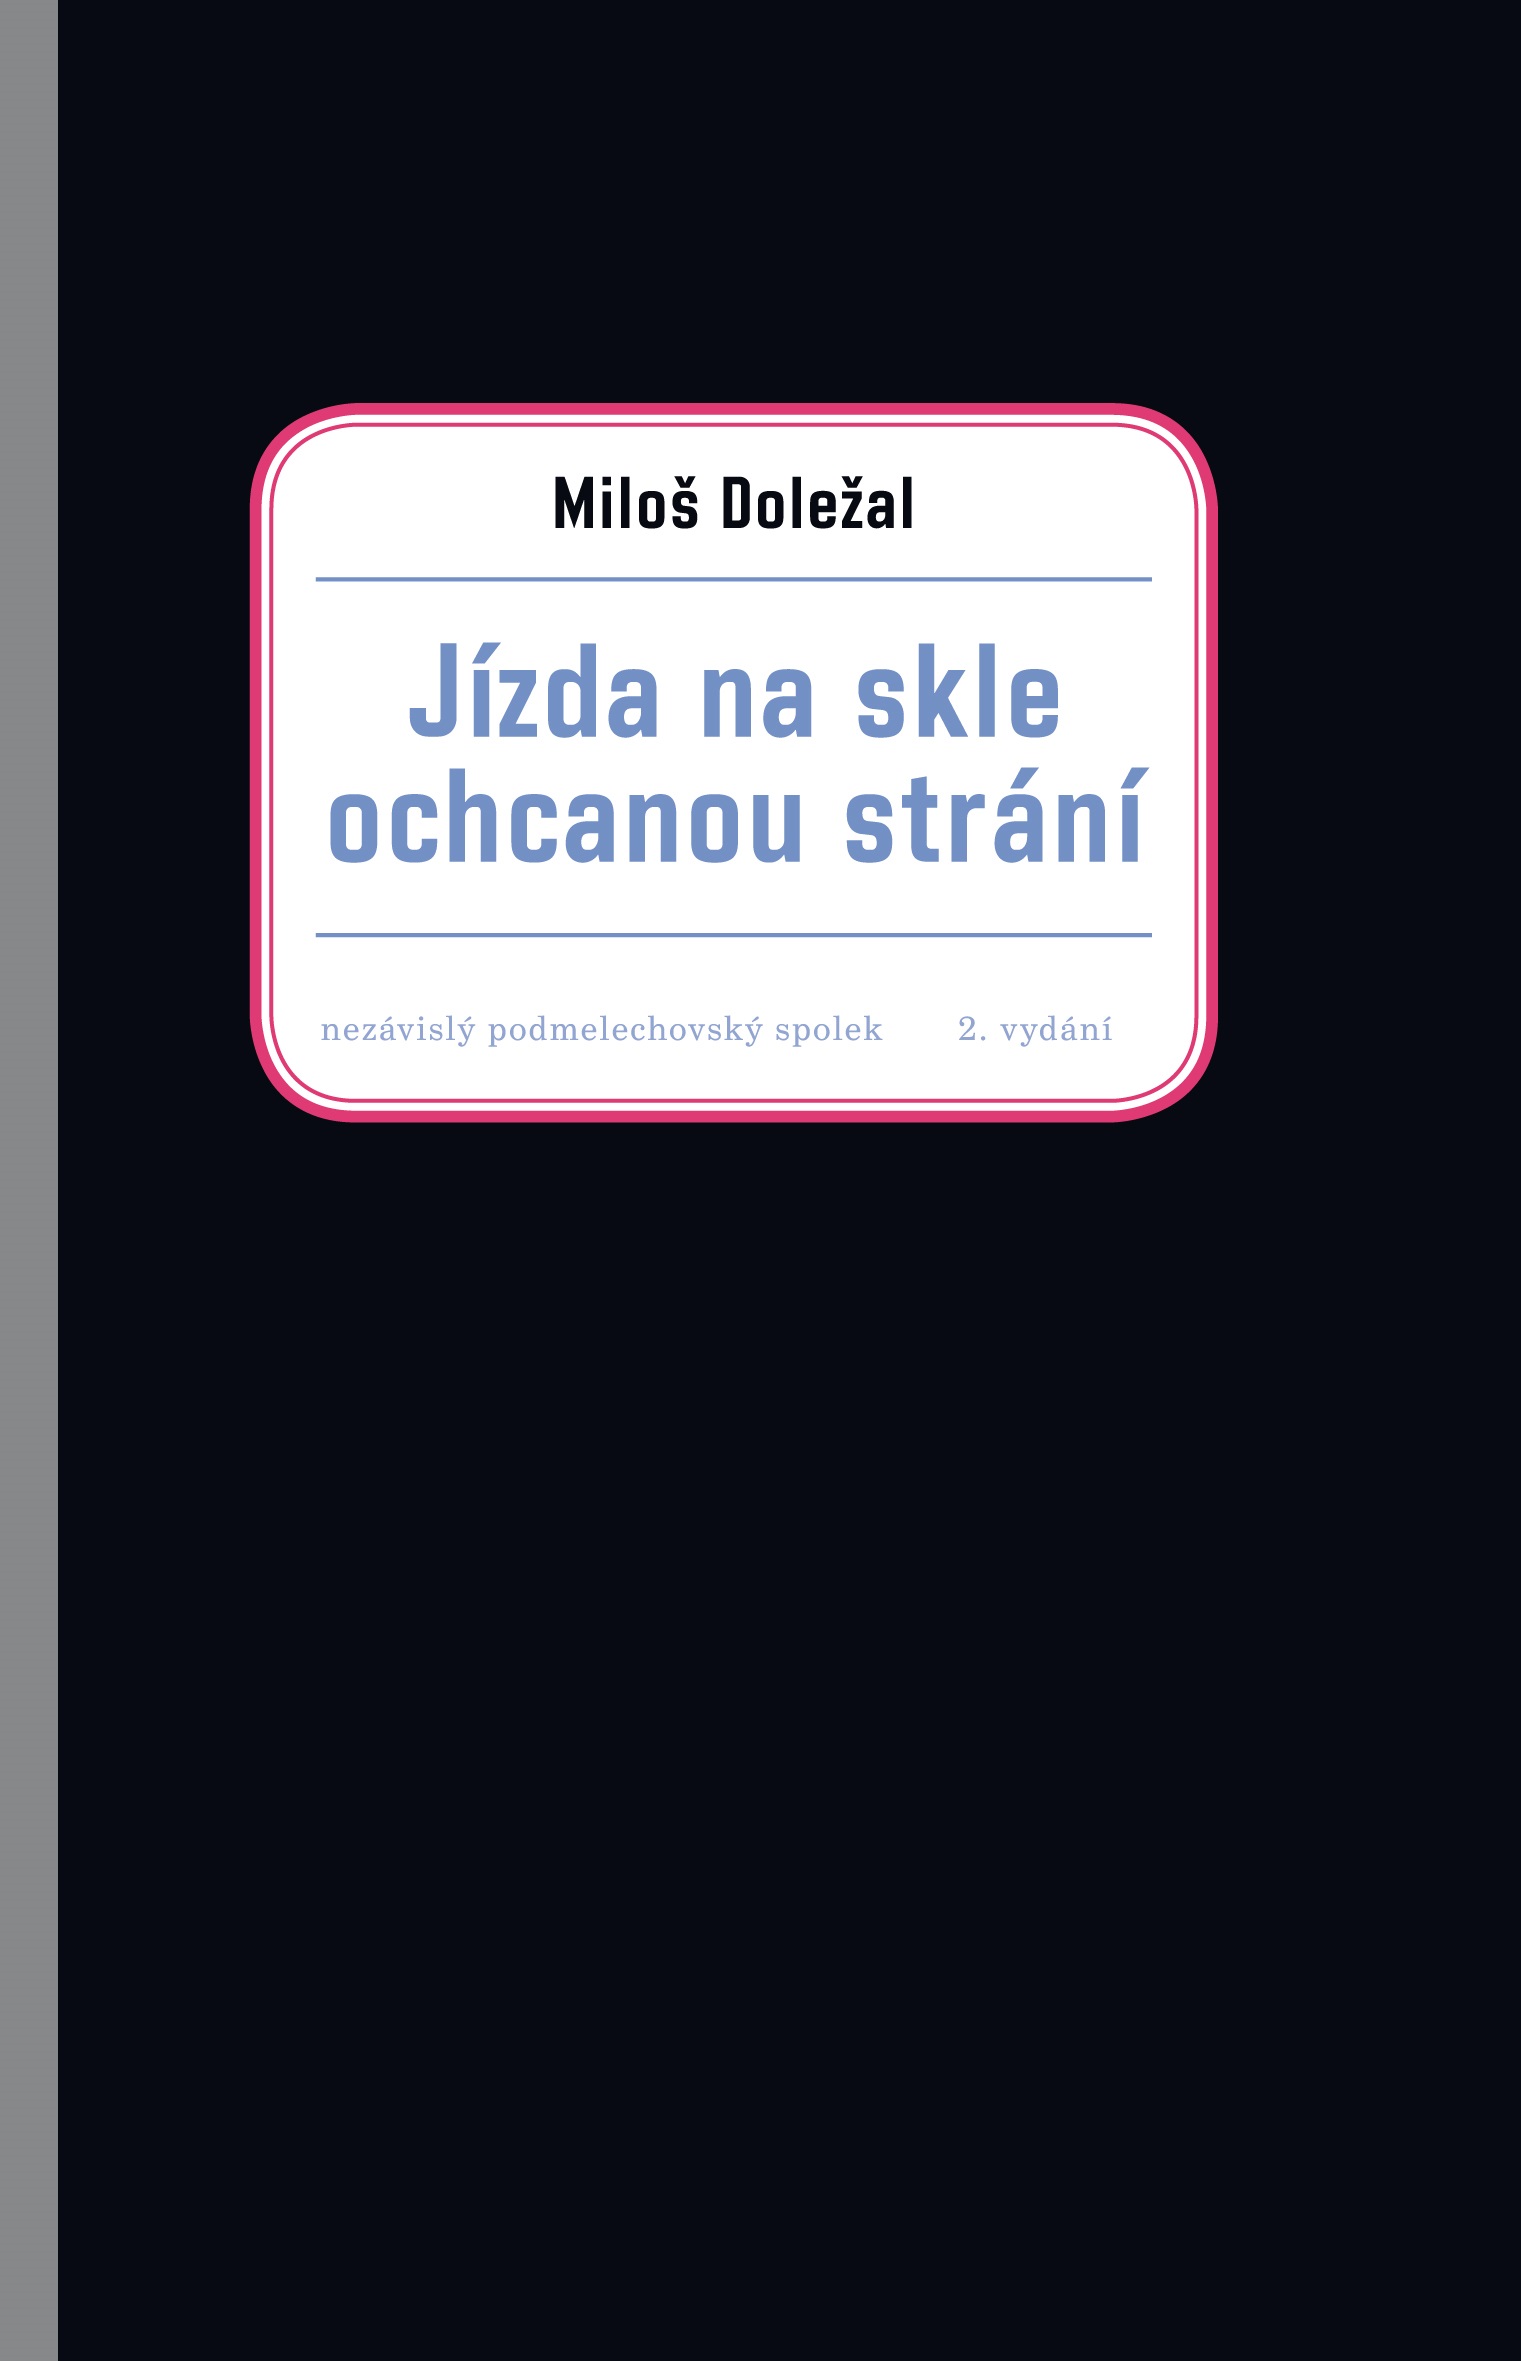 Právě vyšlo 2.rozšířené vydání knihy Miloše Doležala Jízda ochcanou strání